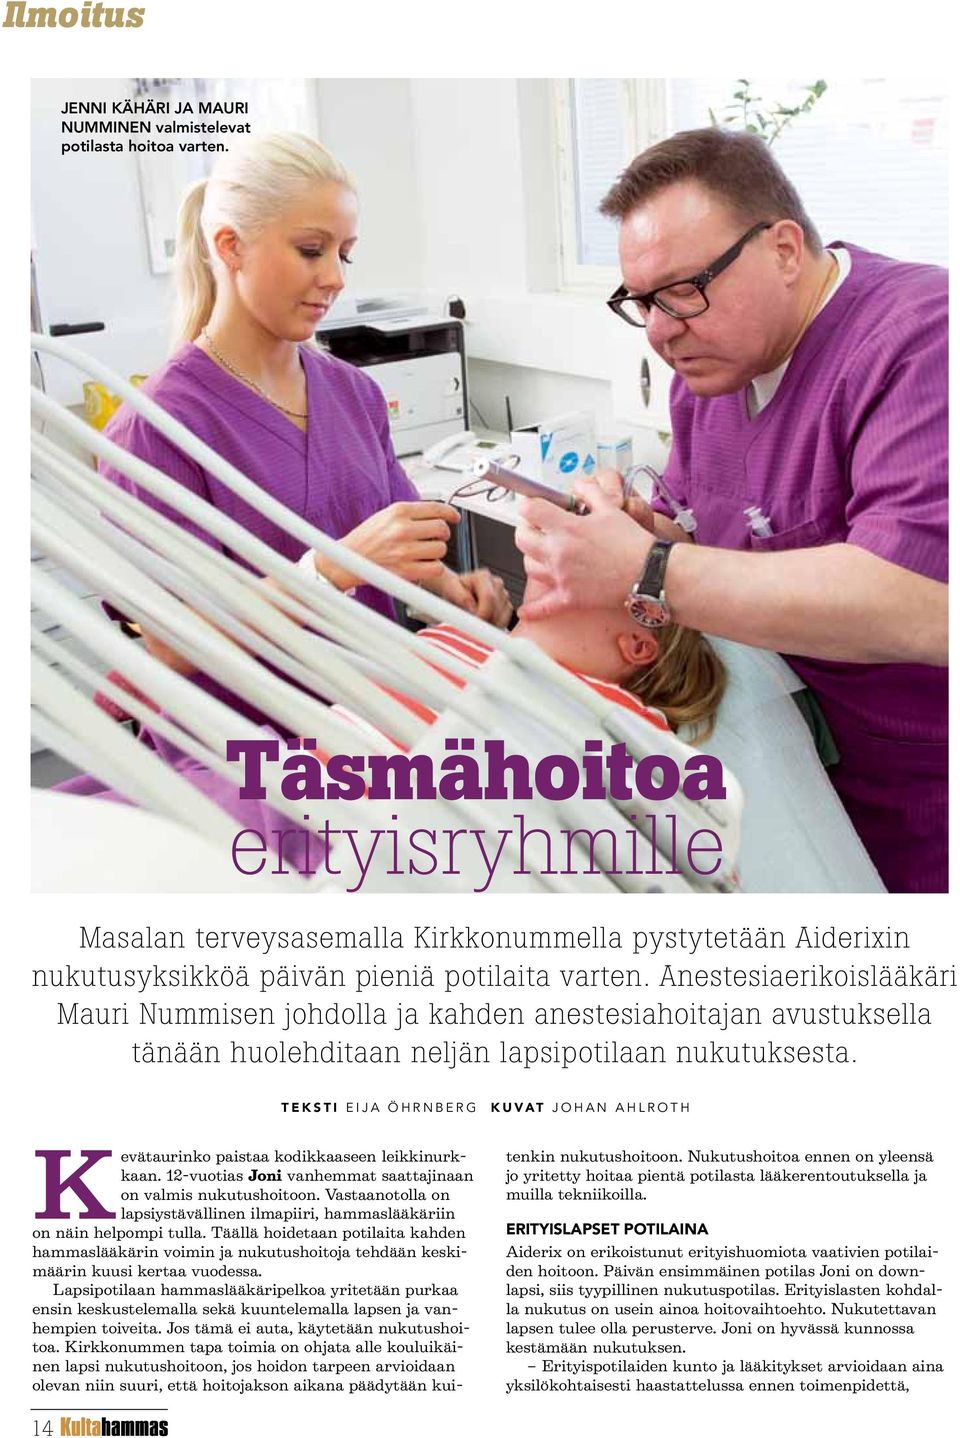 Anestesiaerikoislääkäri Mauri Nummisen johdolla ja kahden anestesiahoitajan avustuksella tänään huolehditaan neljän lapsipotilaan nukutuksesta.